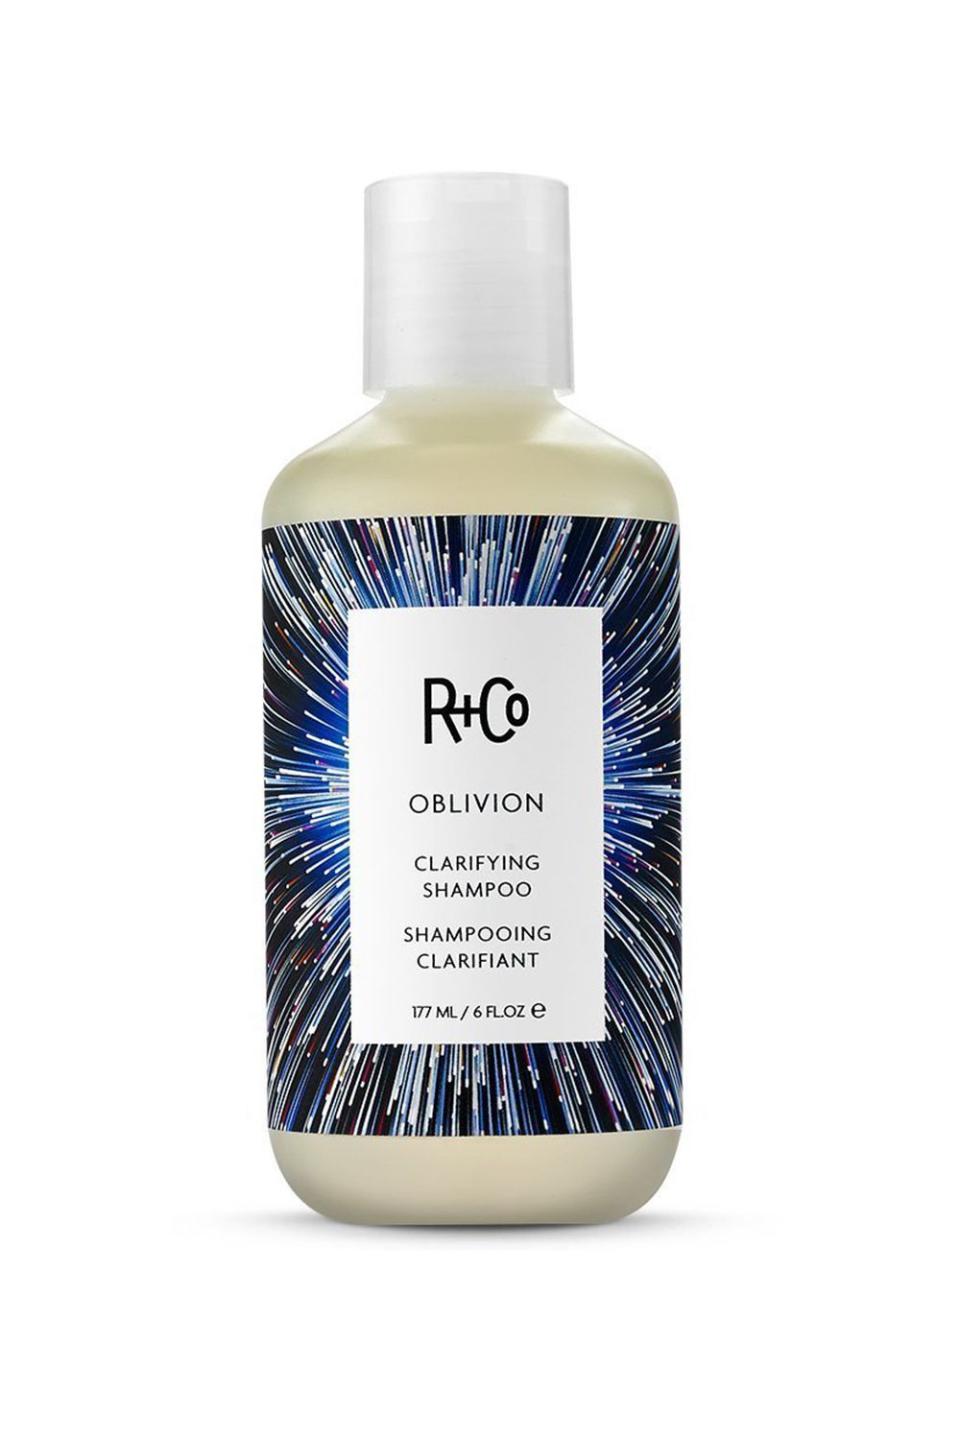 12) R+Co Oblivion Clarifying Shampoo